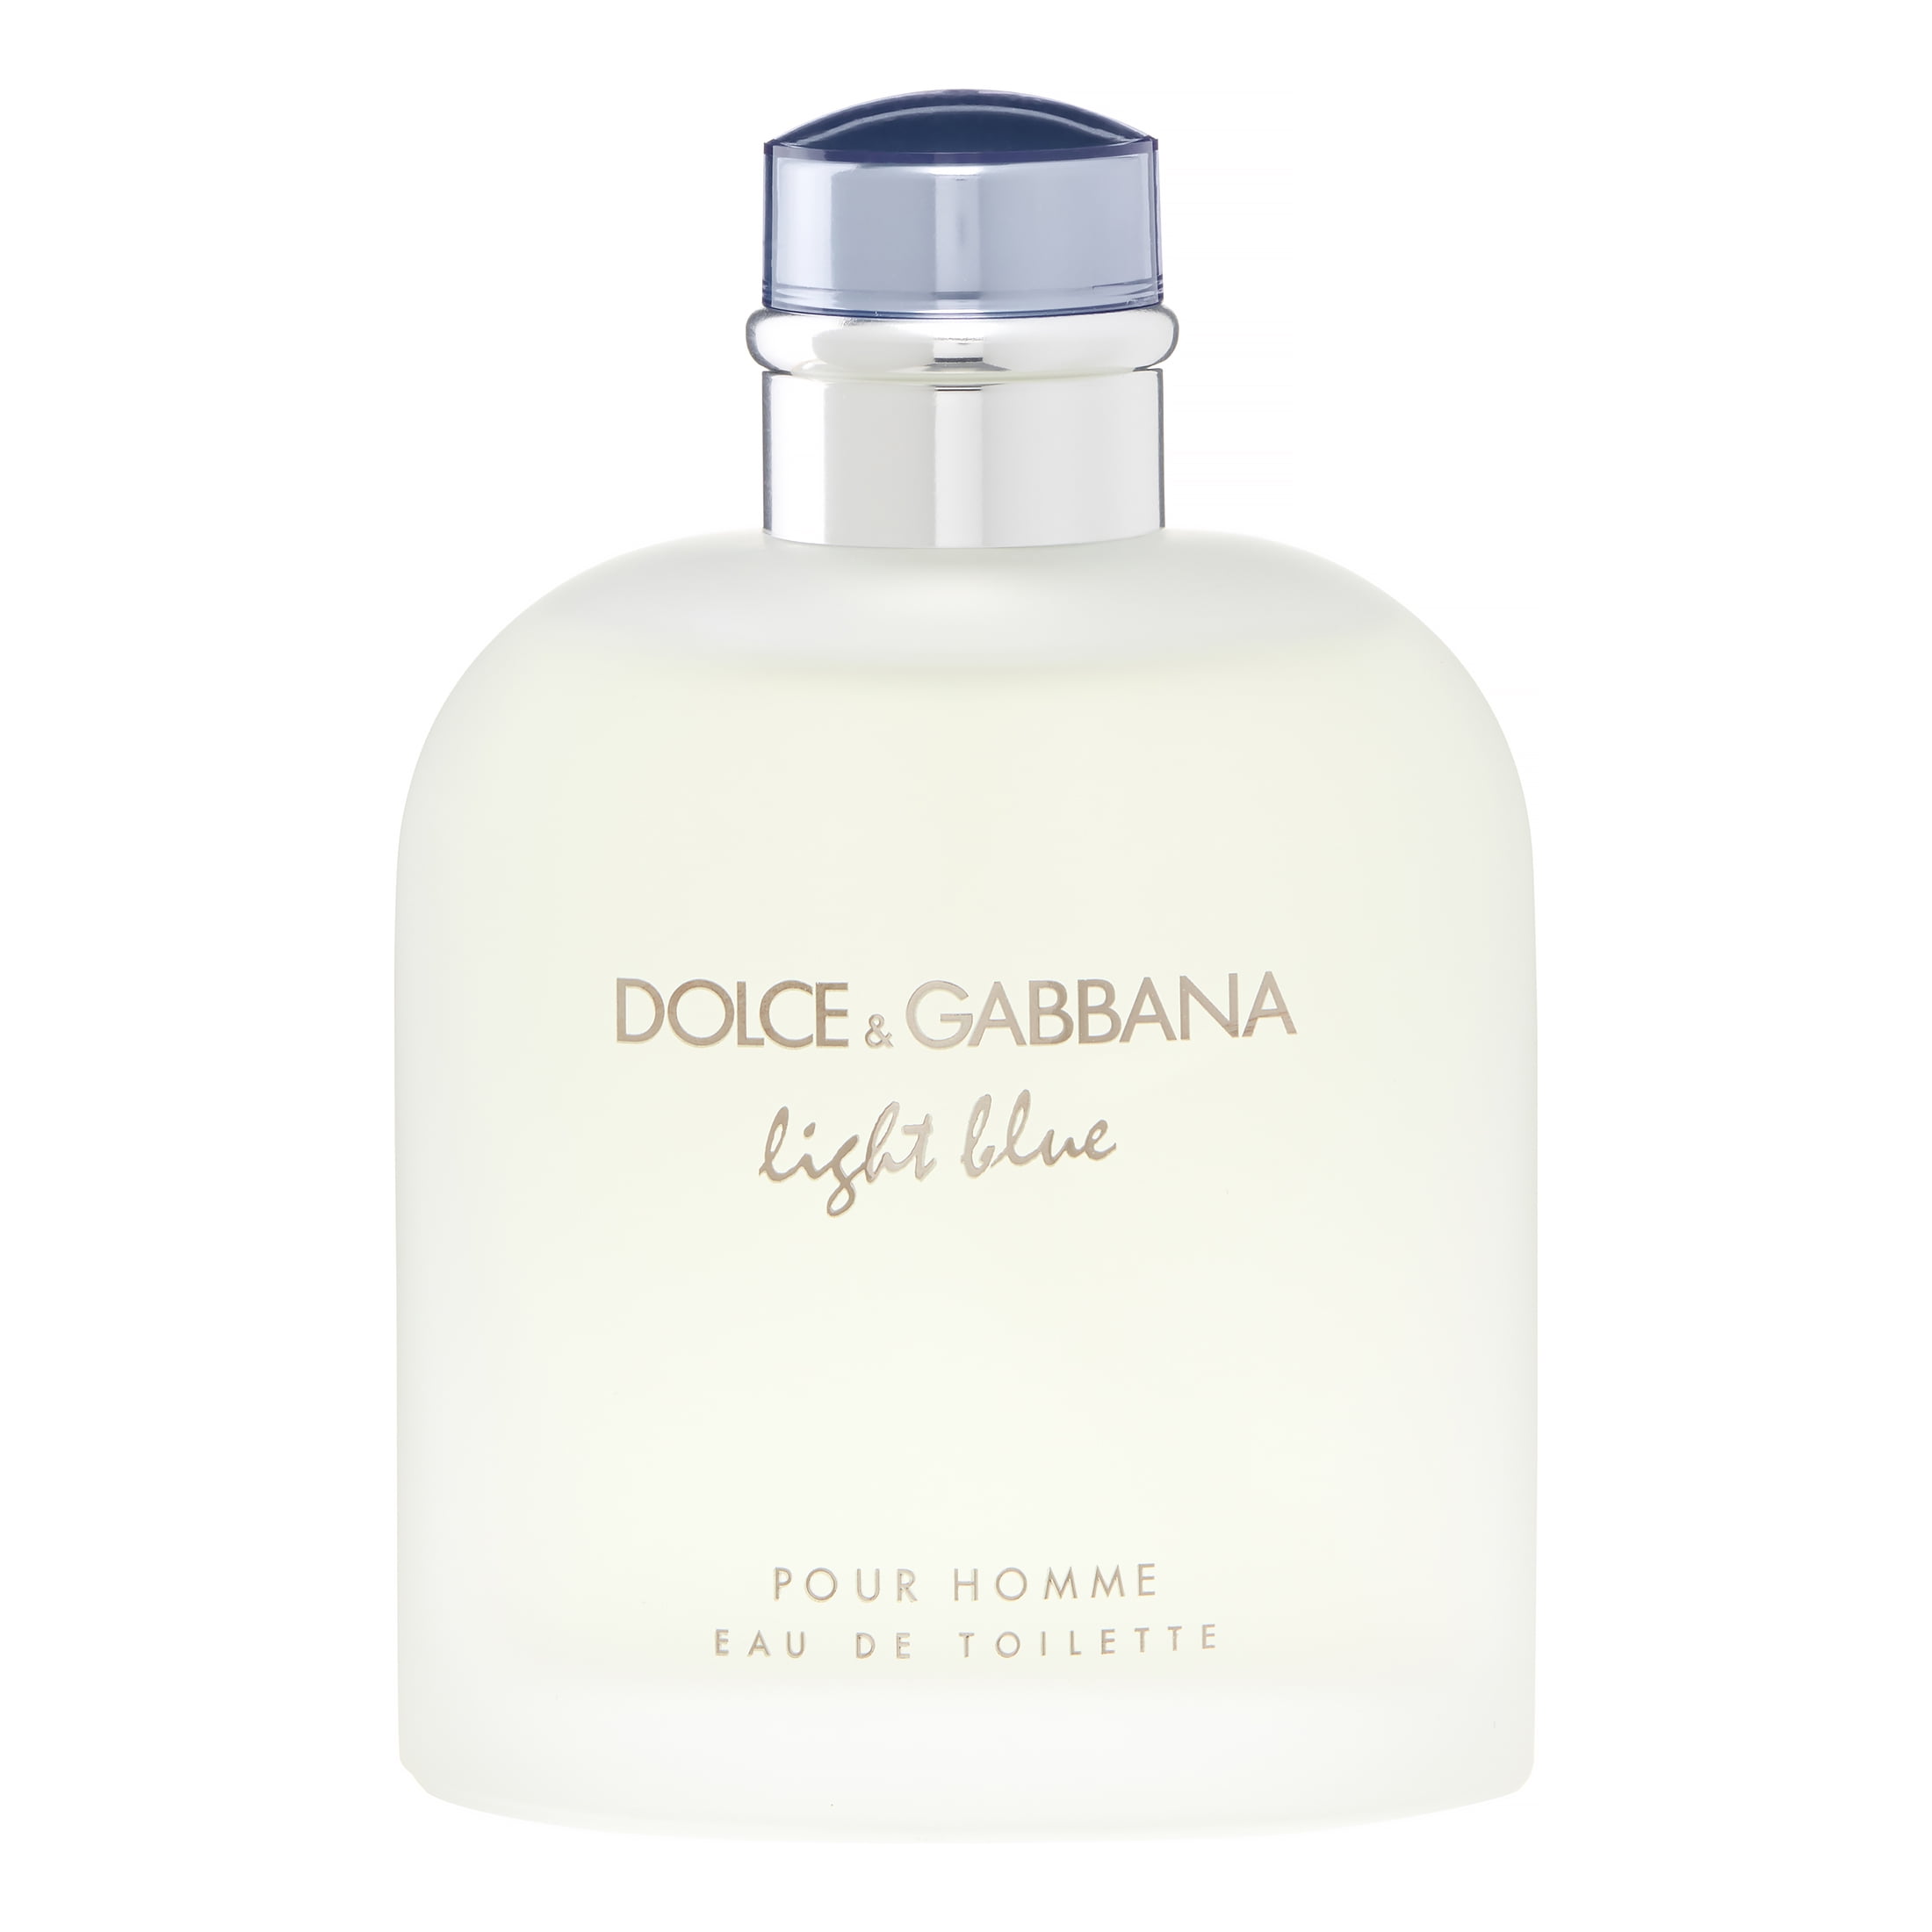 Light Blue by Dolce & Gabbana for Men 4.2 oz Eau de Toilette Spray 